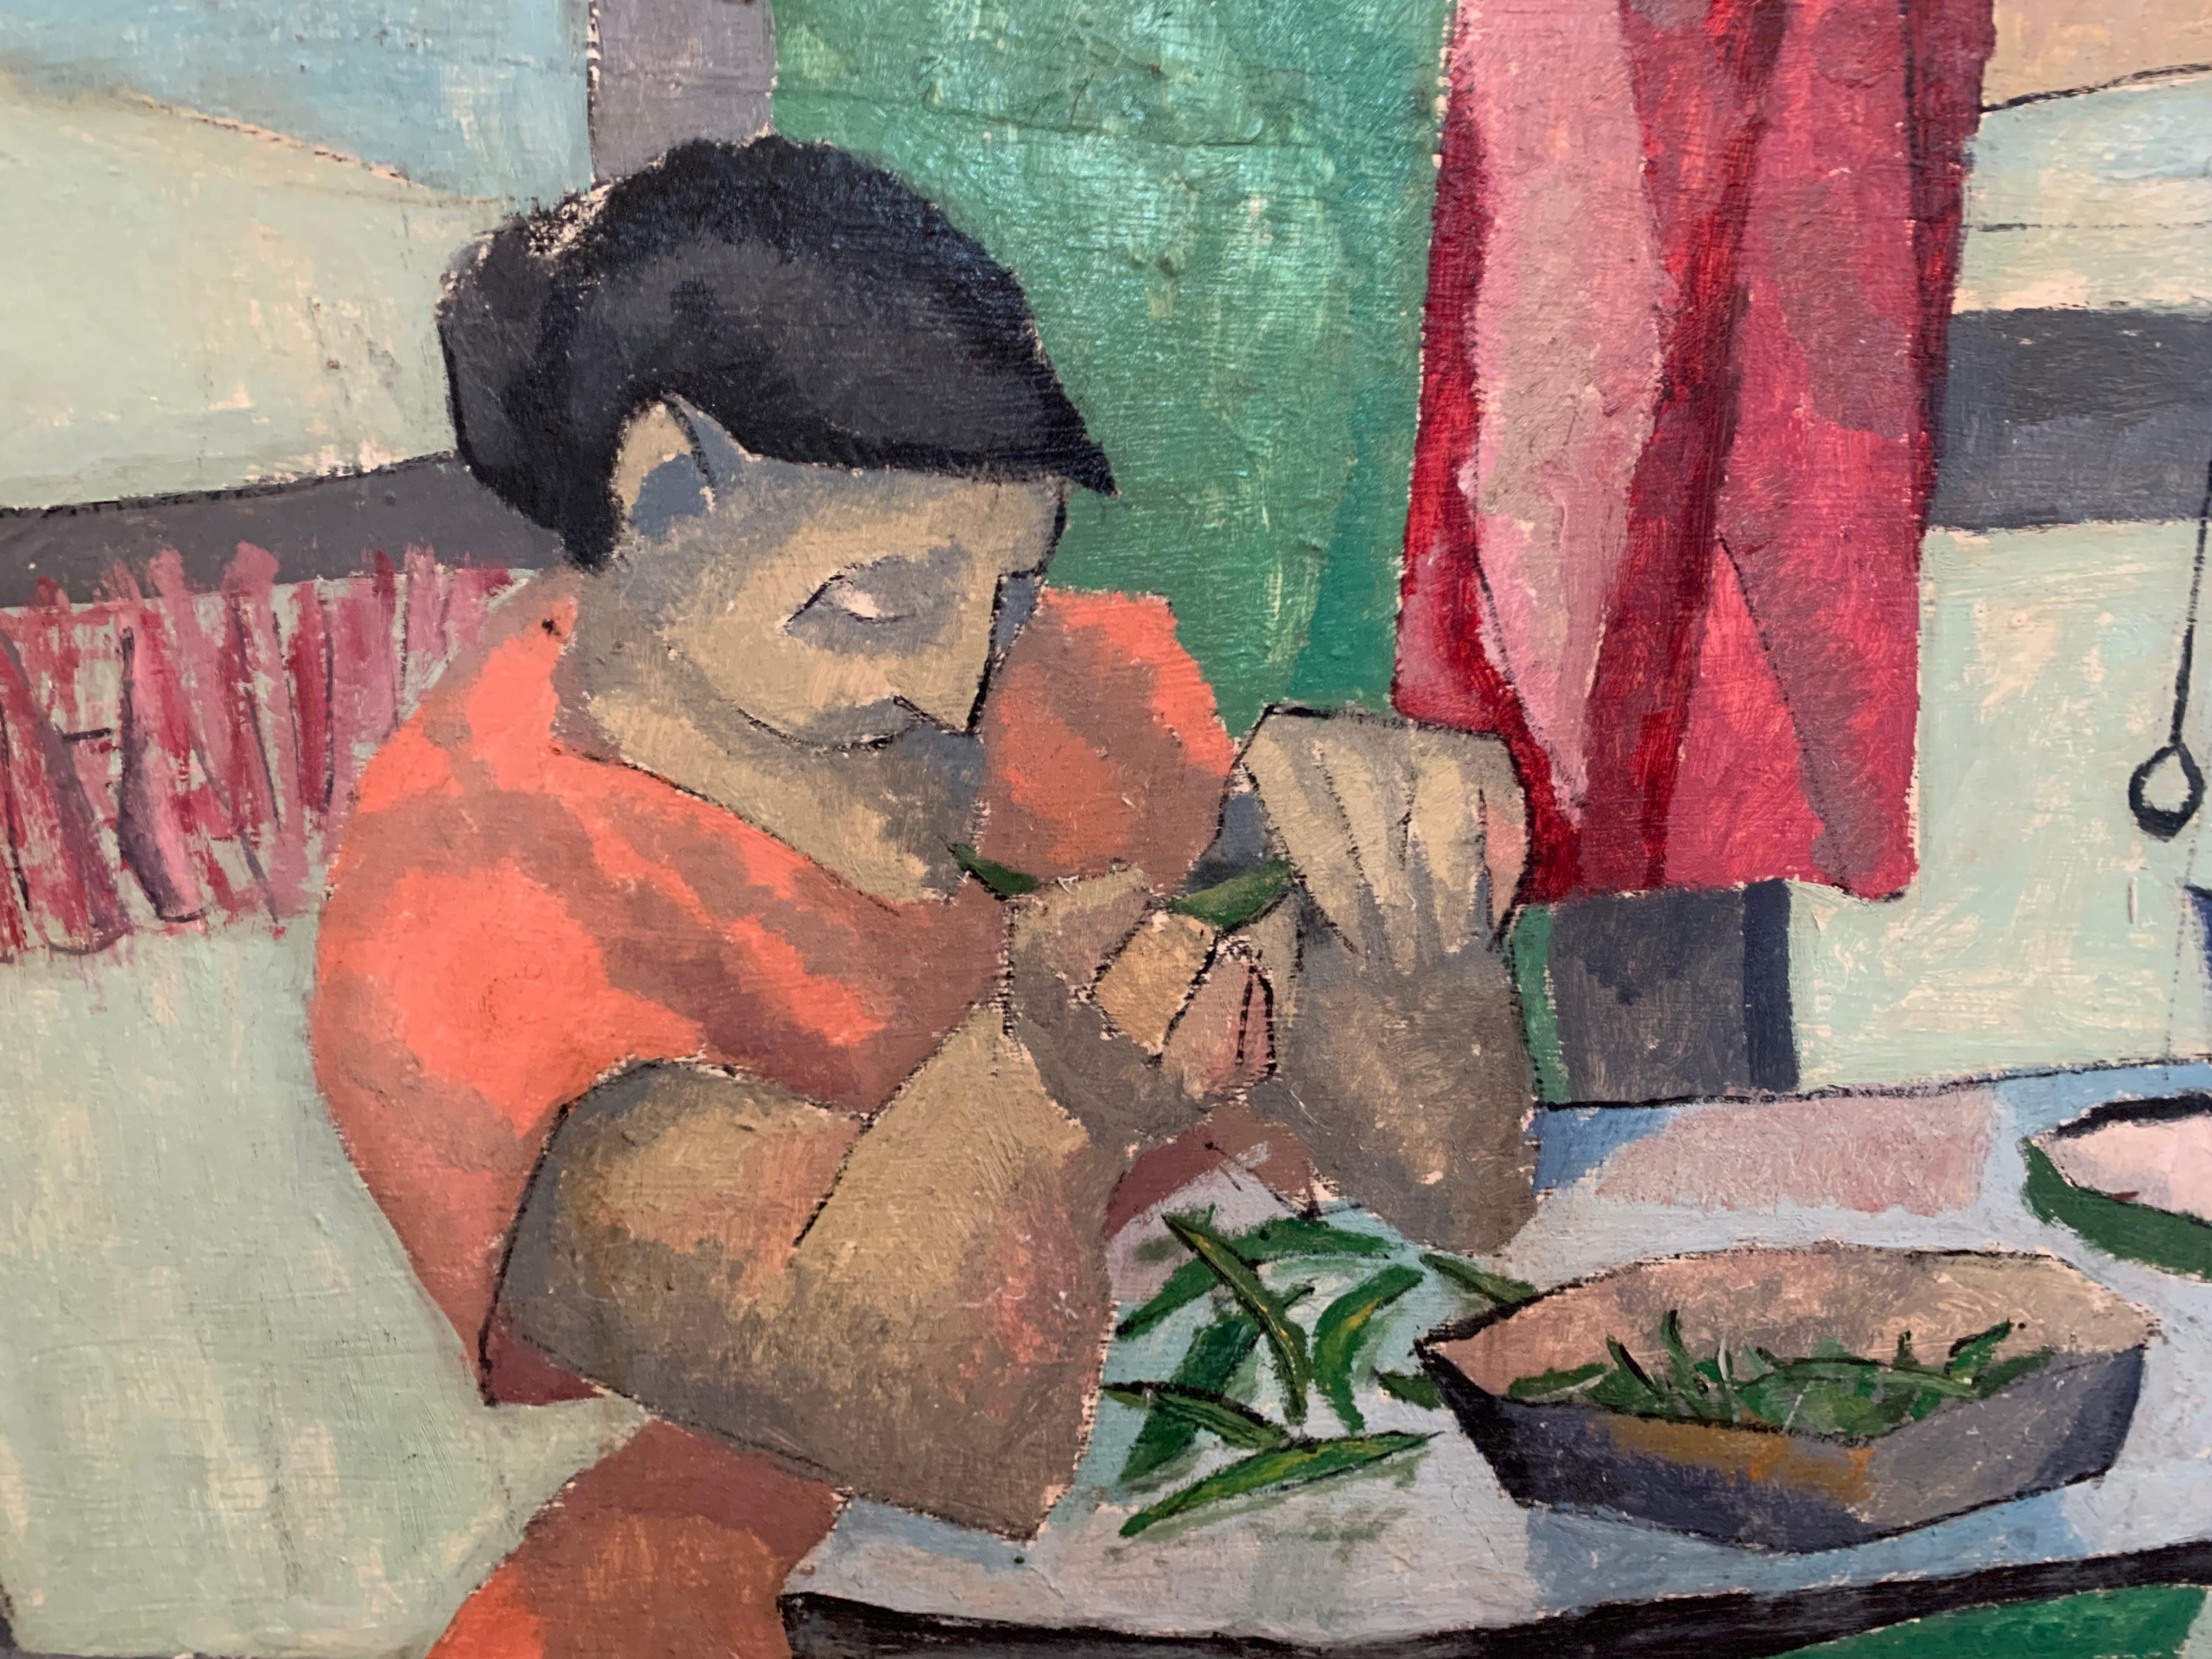 Zuckererbsen, Expressionist  Porträt einer jungen Frau von Künstlerin aus Philadelphia – Painting von Bernard Harmon